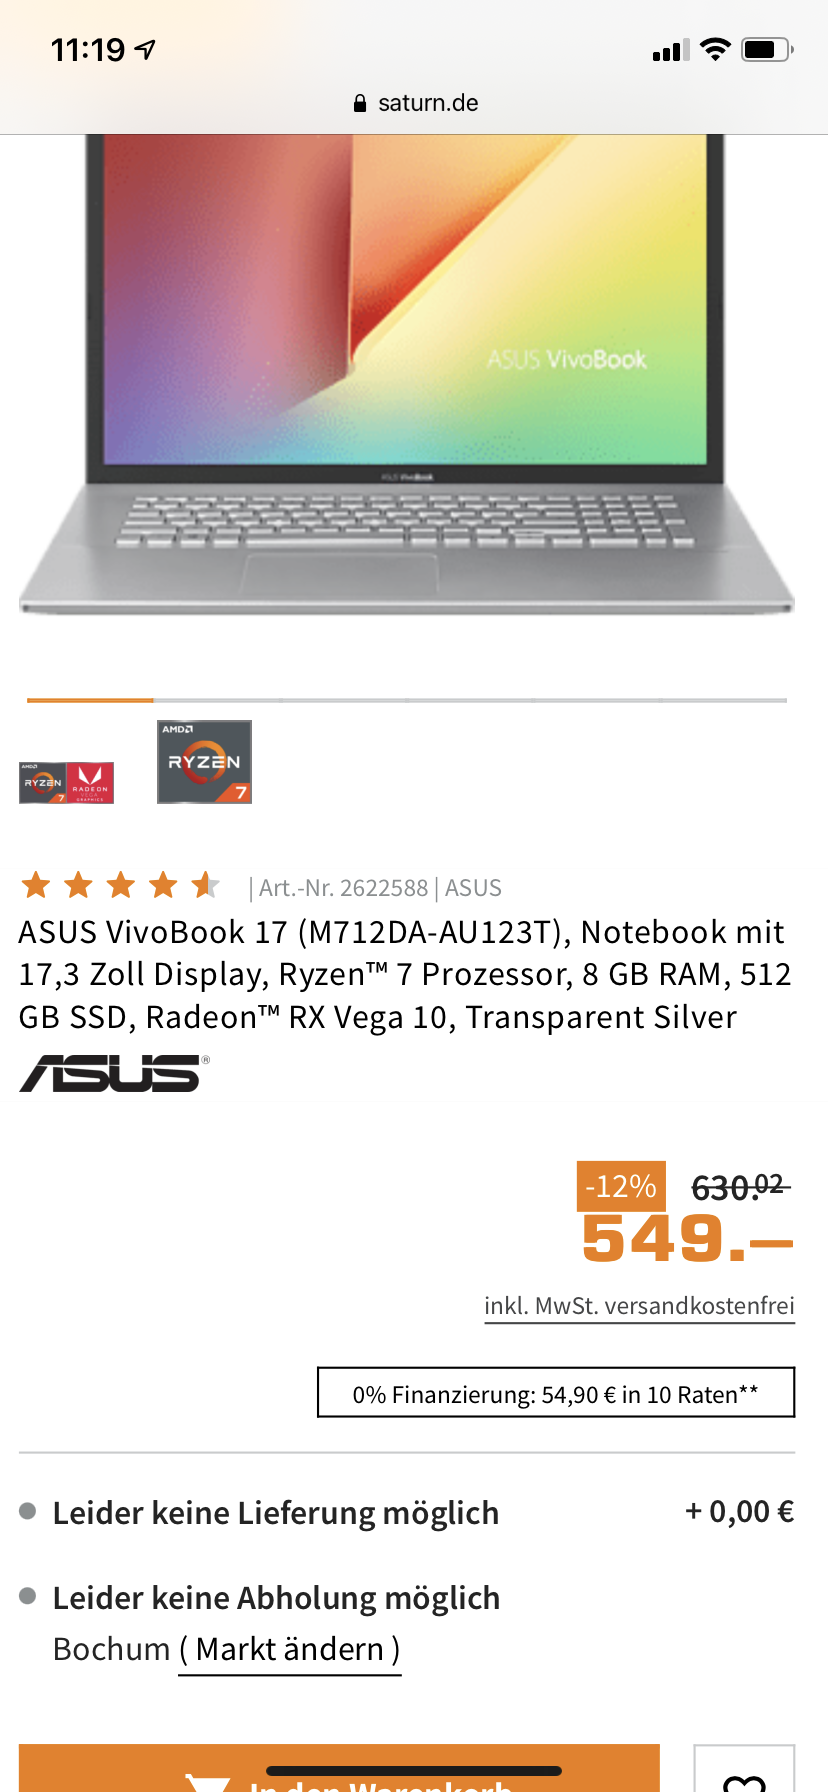 Welcher Laptop ist der bessere?